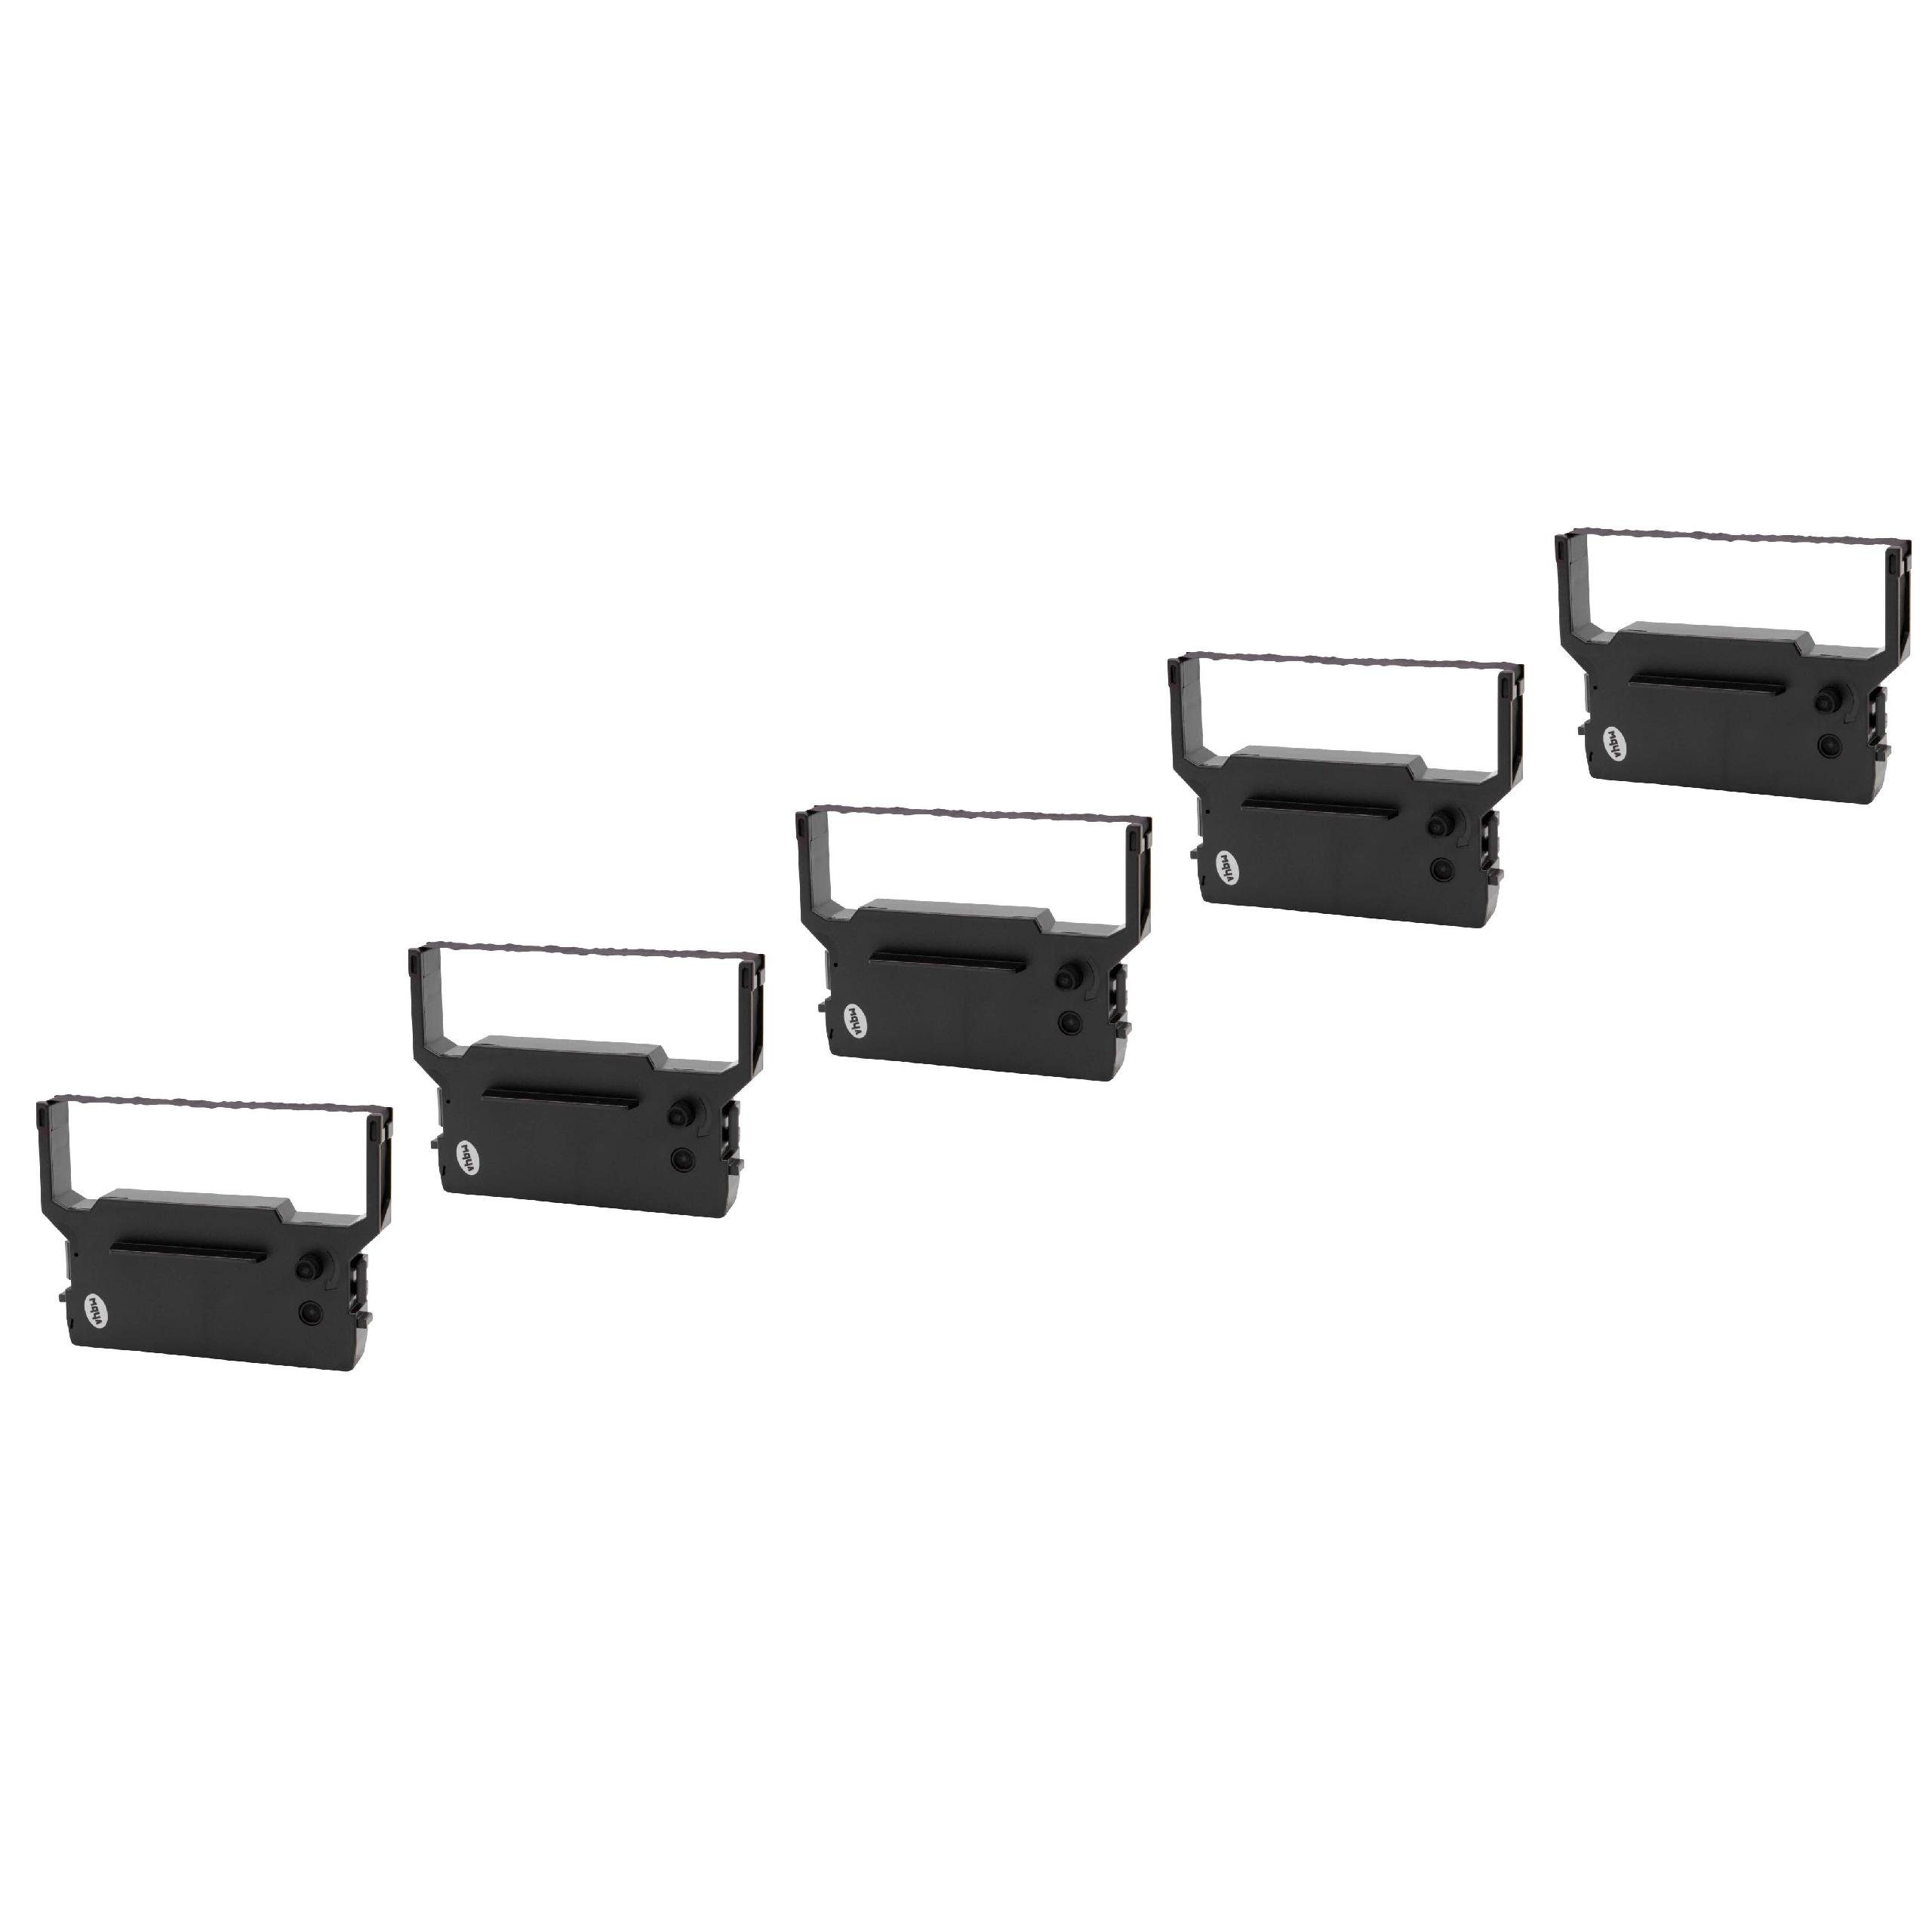 vhbw Beschriftungsband passend Kopierer für KP 300 & Drucker Casio Nadeldrucker